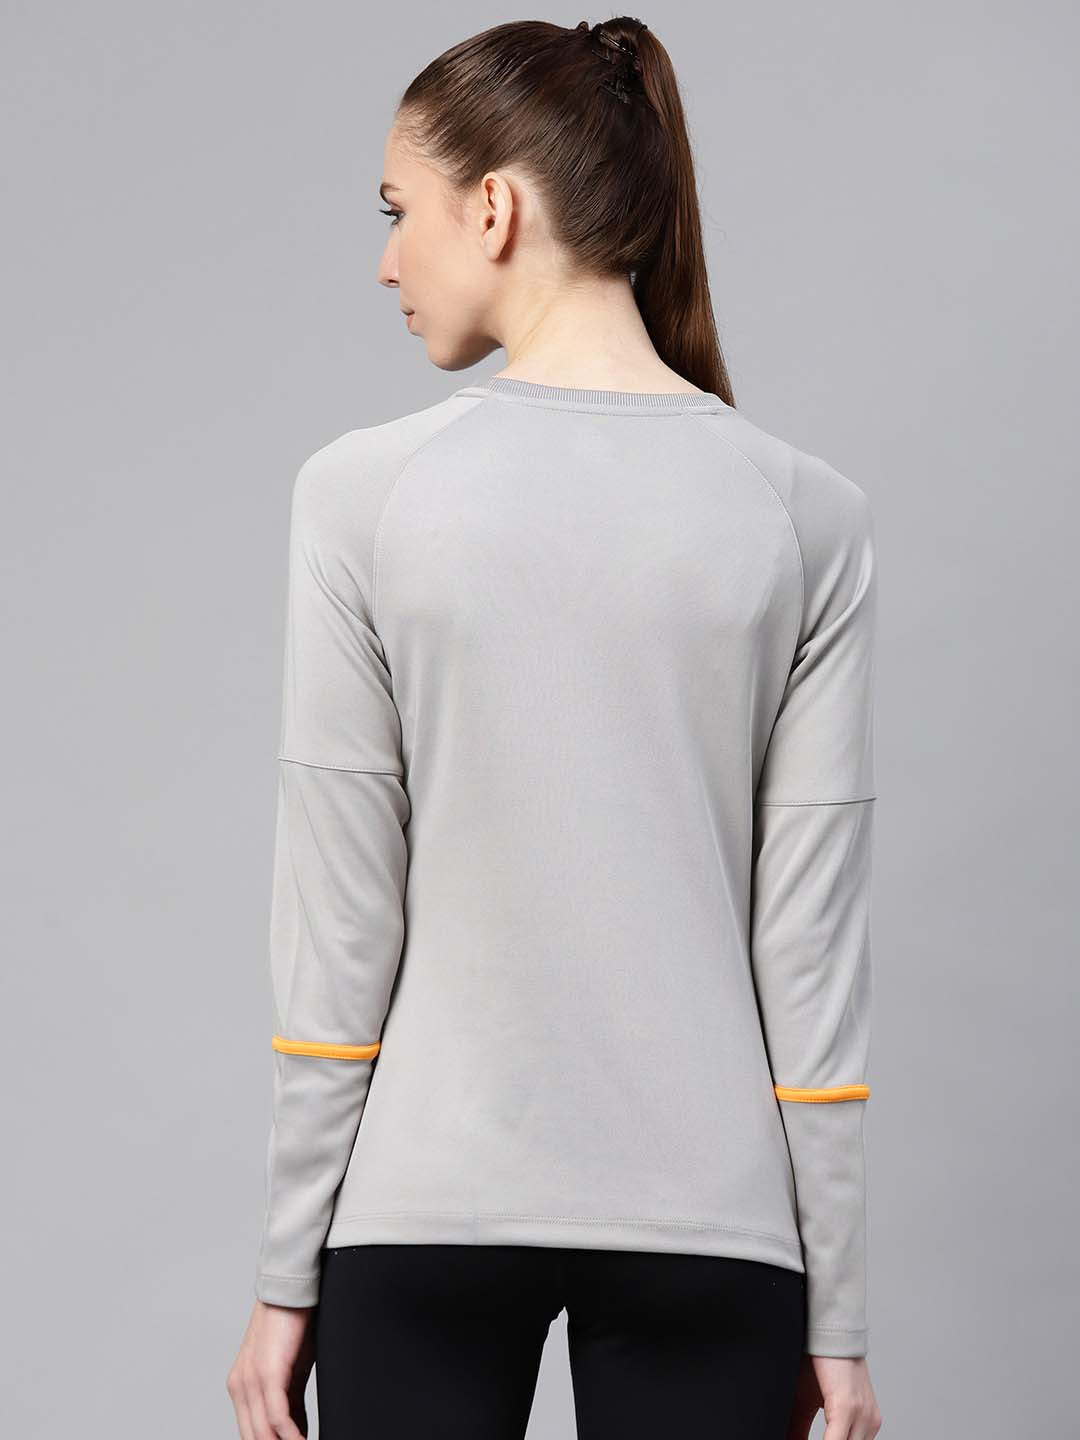 Alcis Women Grey Solid Round Neck Tennis T-shirt